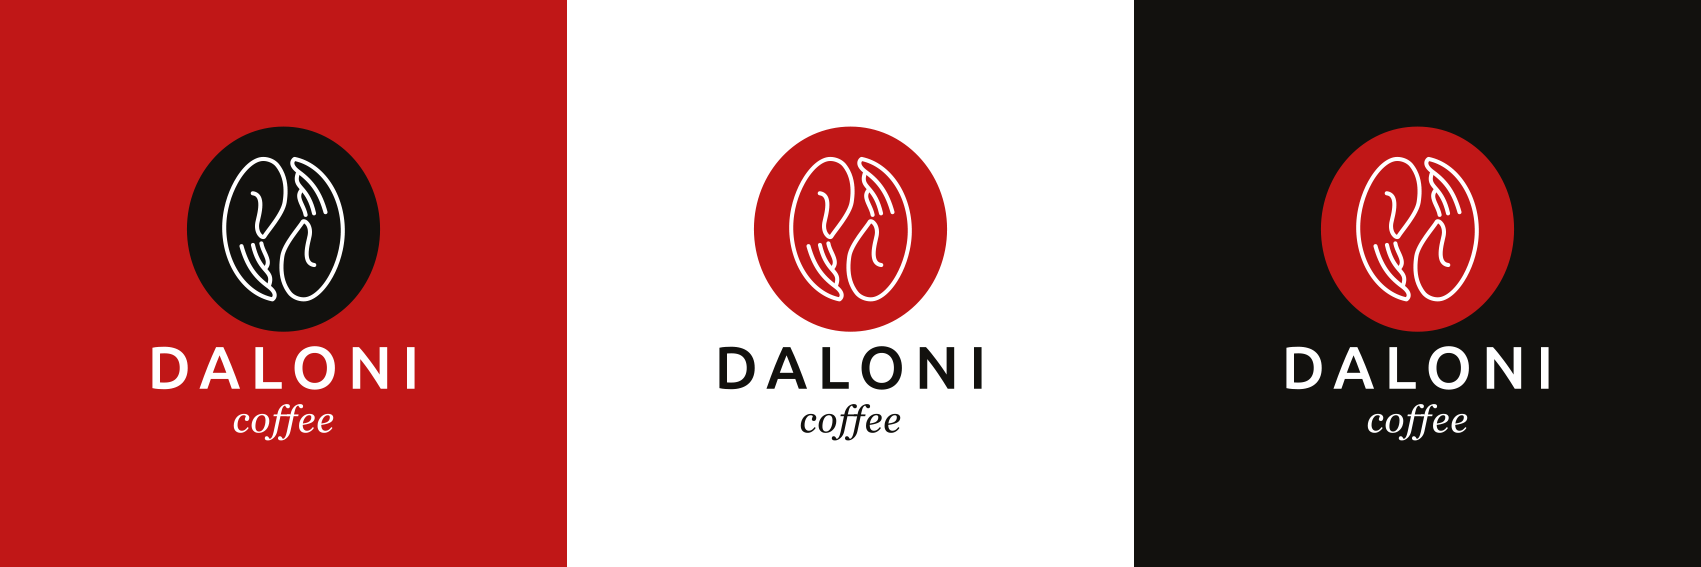 Daloni logo